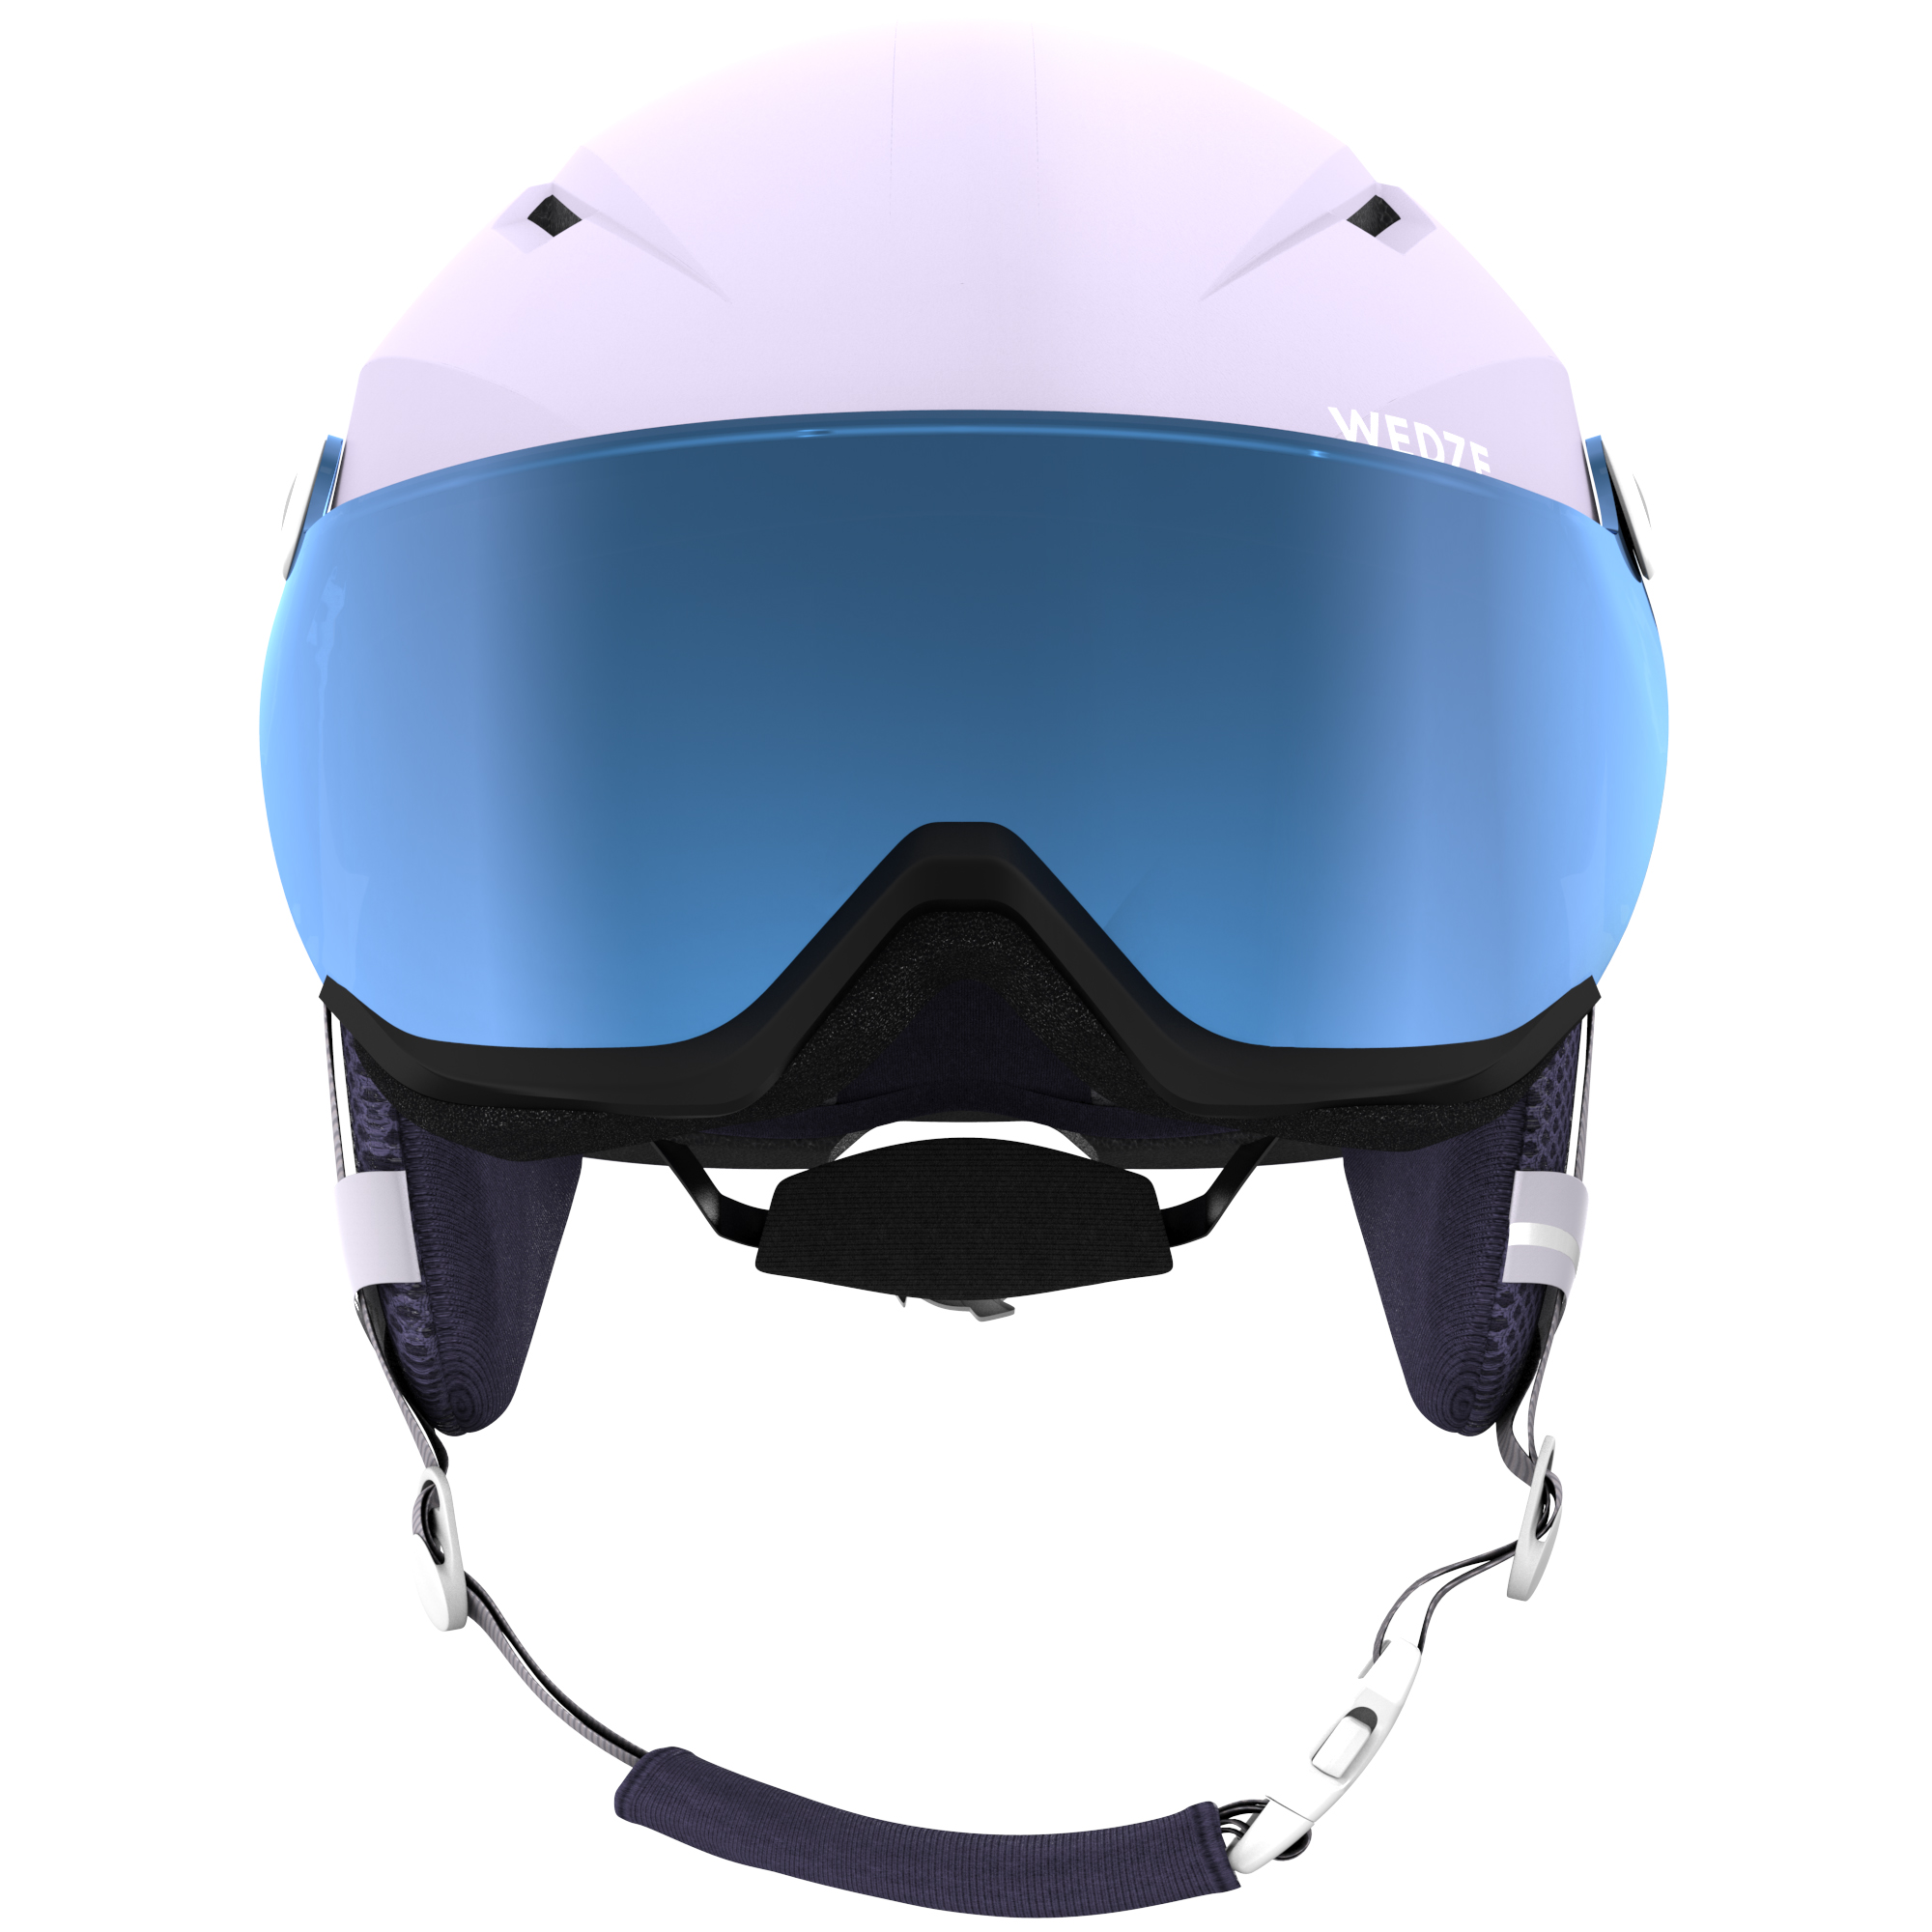 Les 5 meilleurs casques de ski et accessoires pour votre sécurité